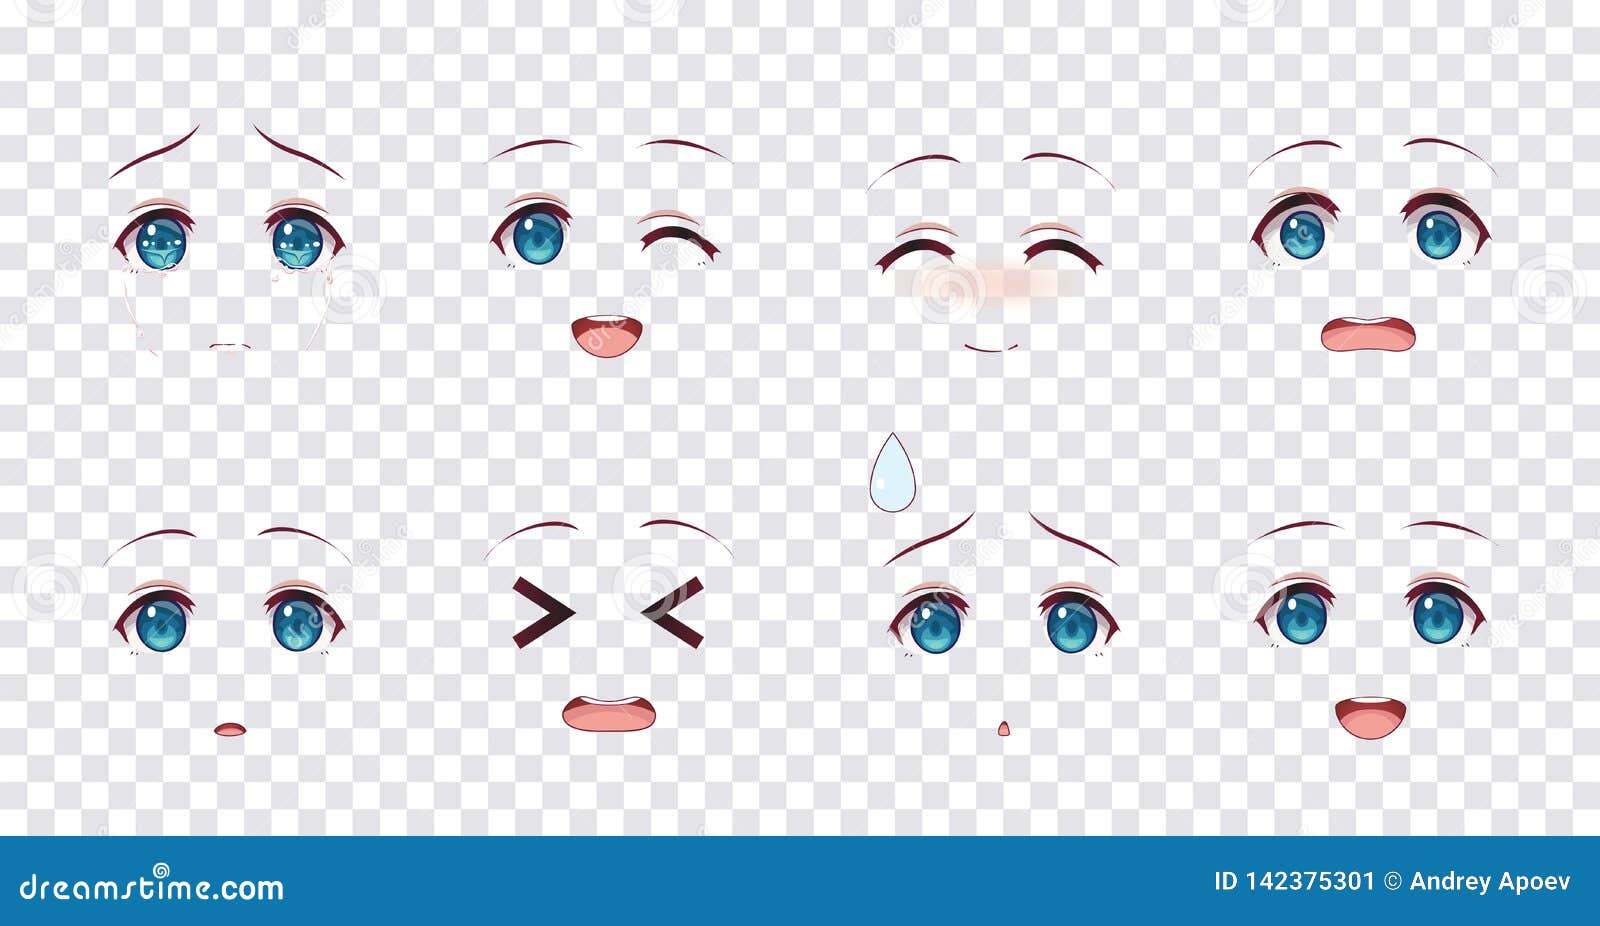 emotions blue eyes of anime manga girls